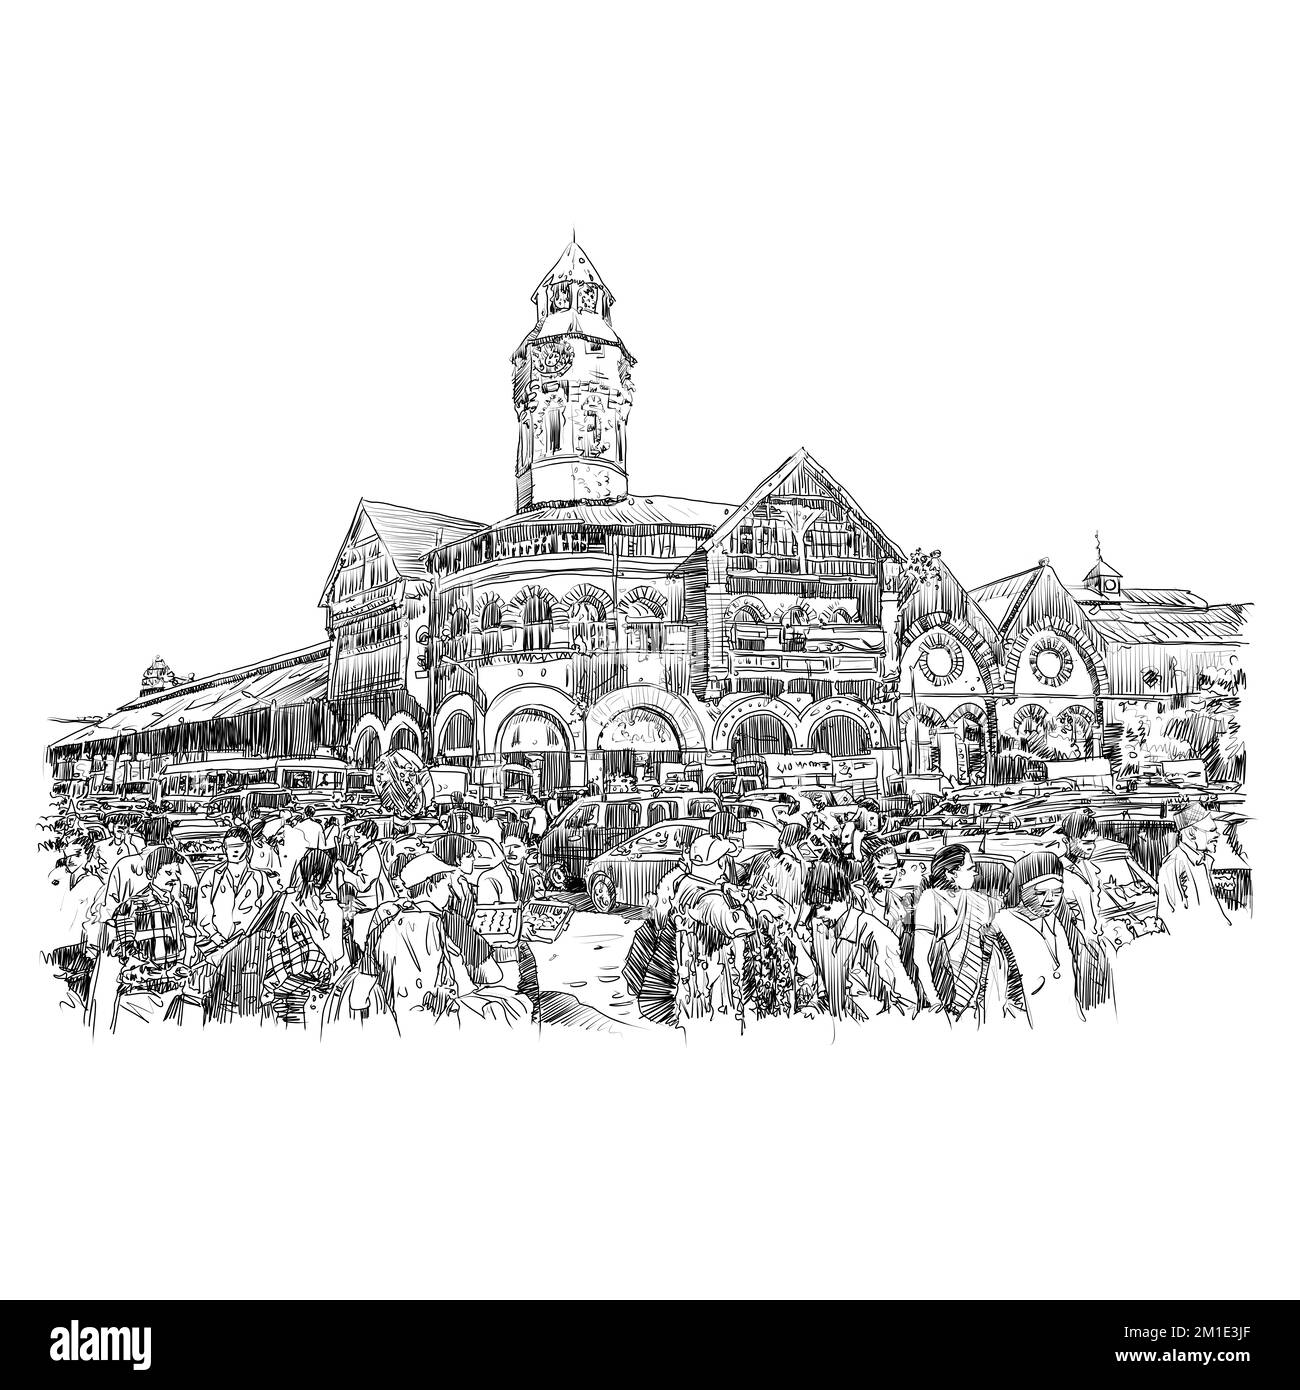 L'un des marchés les plus anciens et les plus populaires de Mumbai - marché Crawford également connu sous le nom de Mahatma Jyotiba Phule Mandai illustration, bâtiments et architectes Banque D'Images